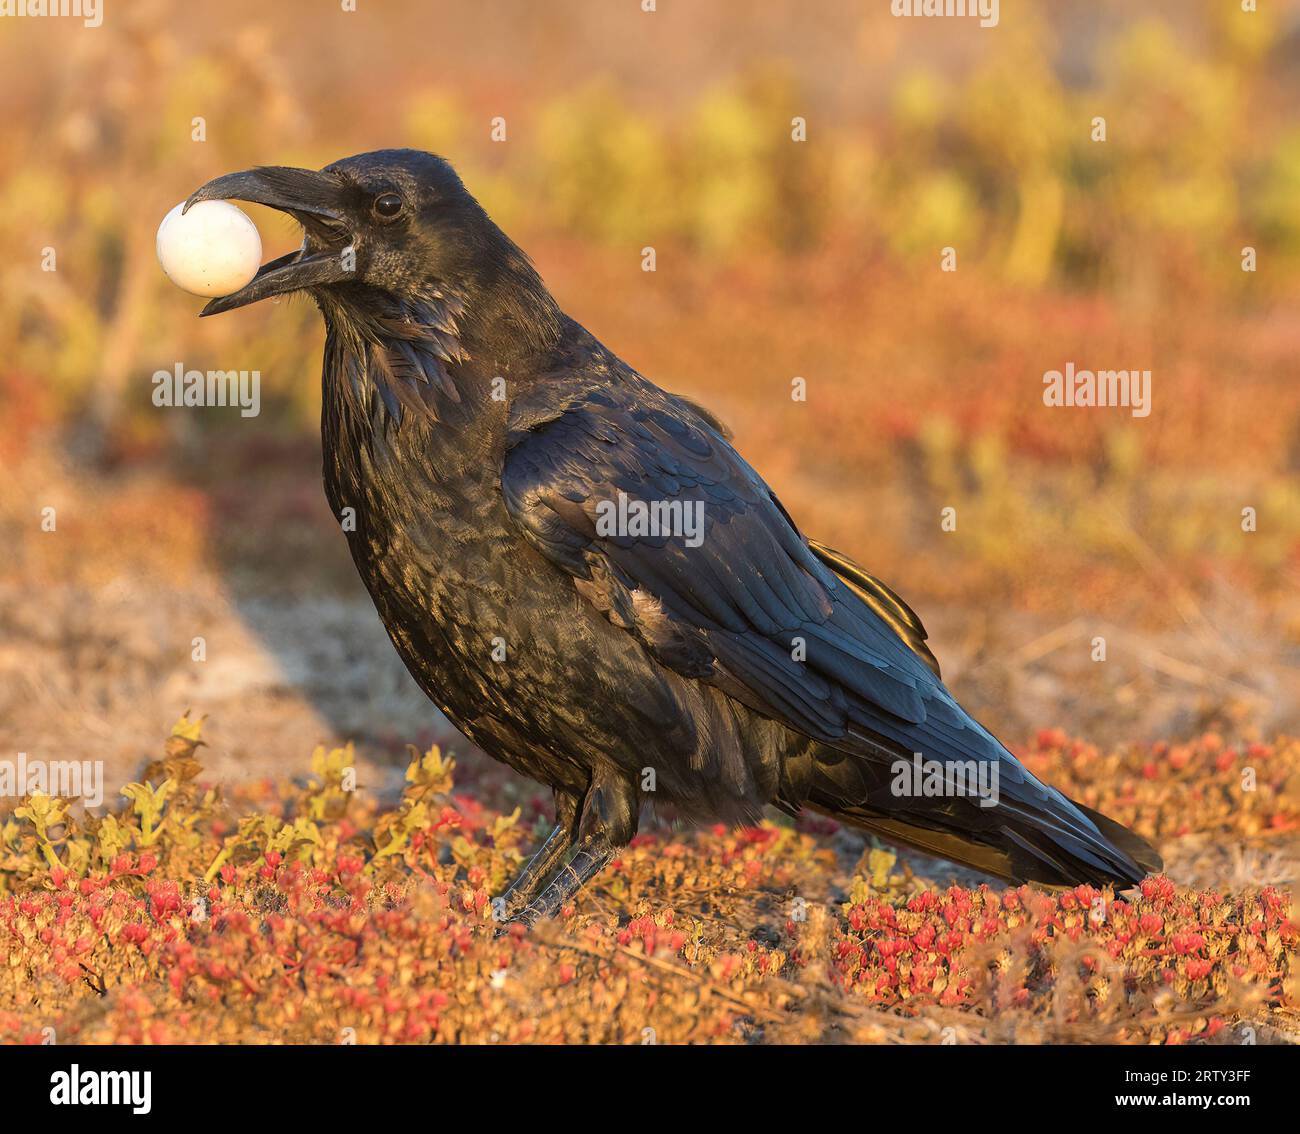 Il corvo comune con un uovo rubato al nido di uccelli non sorvegliati. Palo alto Baylands, California. Foto Stock